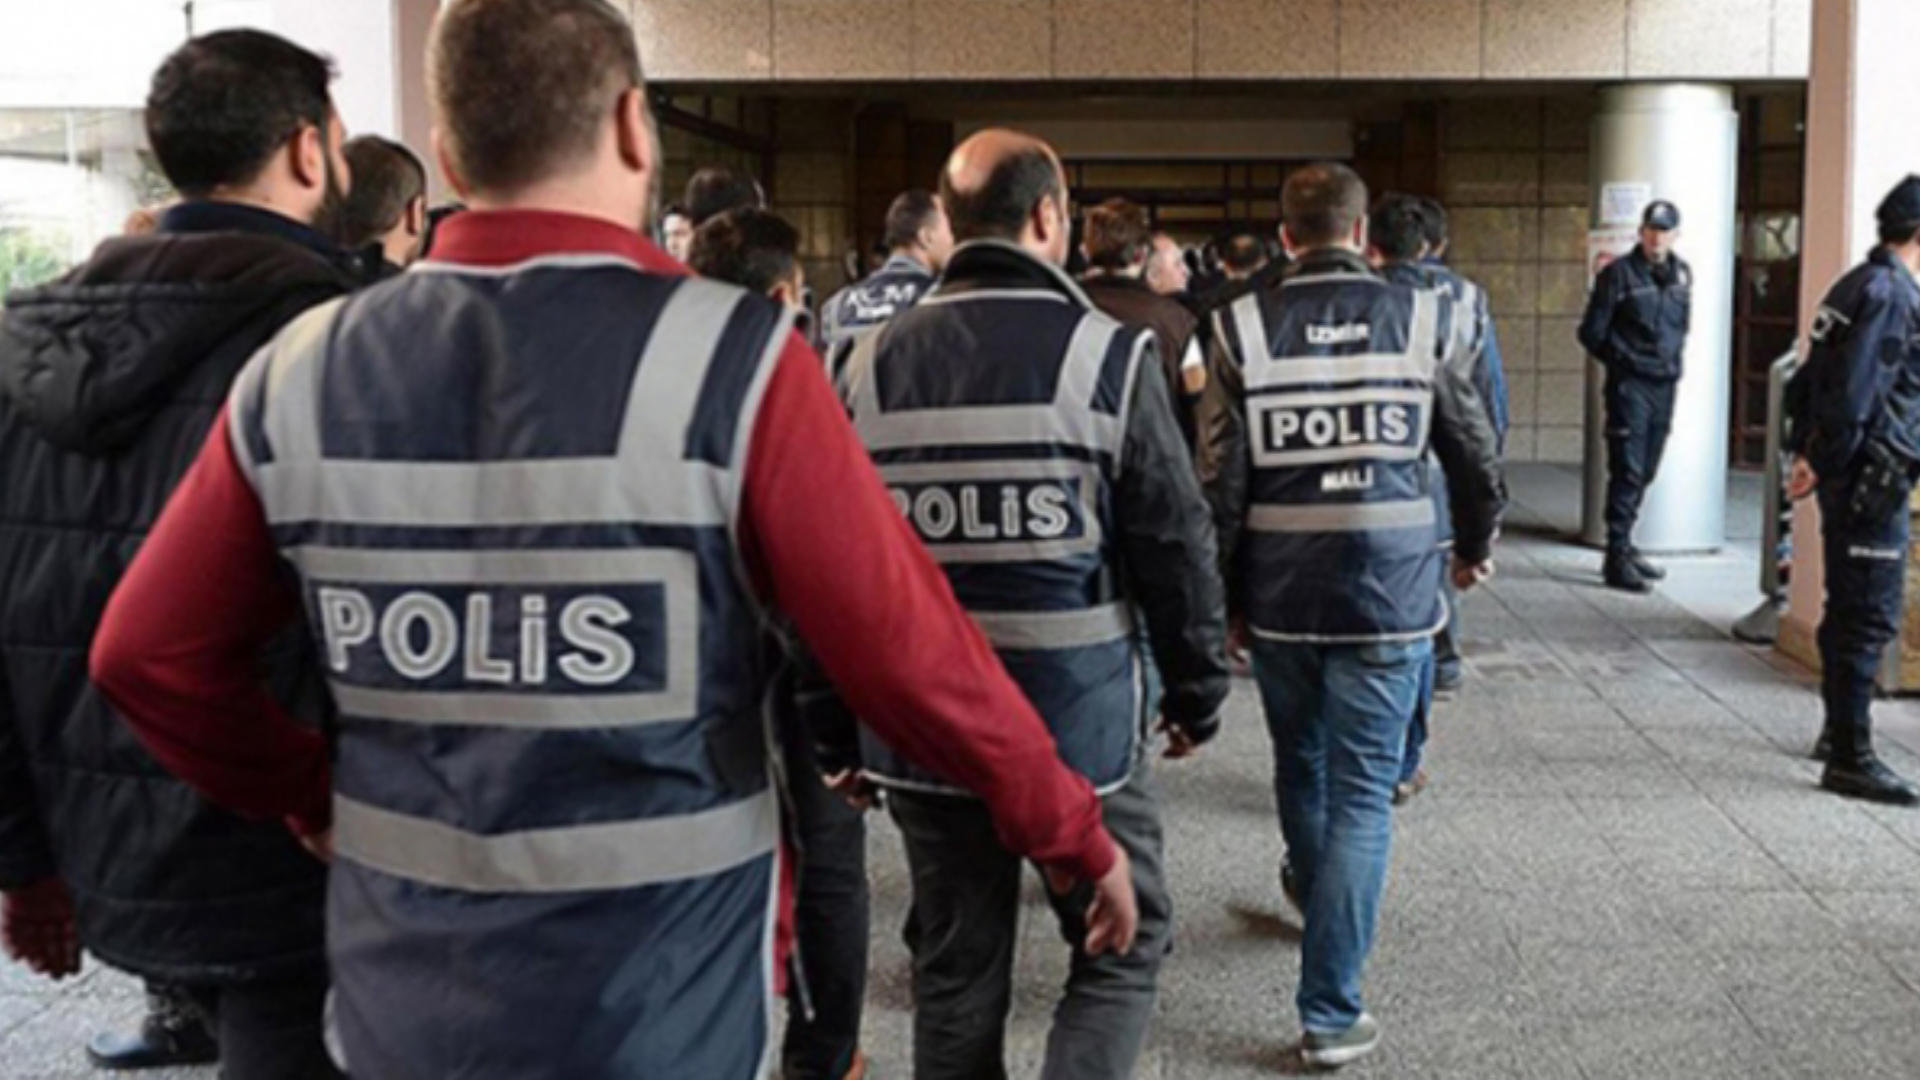 İzmir'de tefecilik operasyonu. 9 şüpheli yakalandı